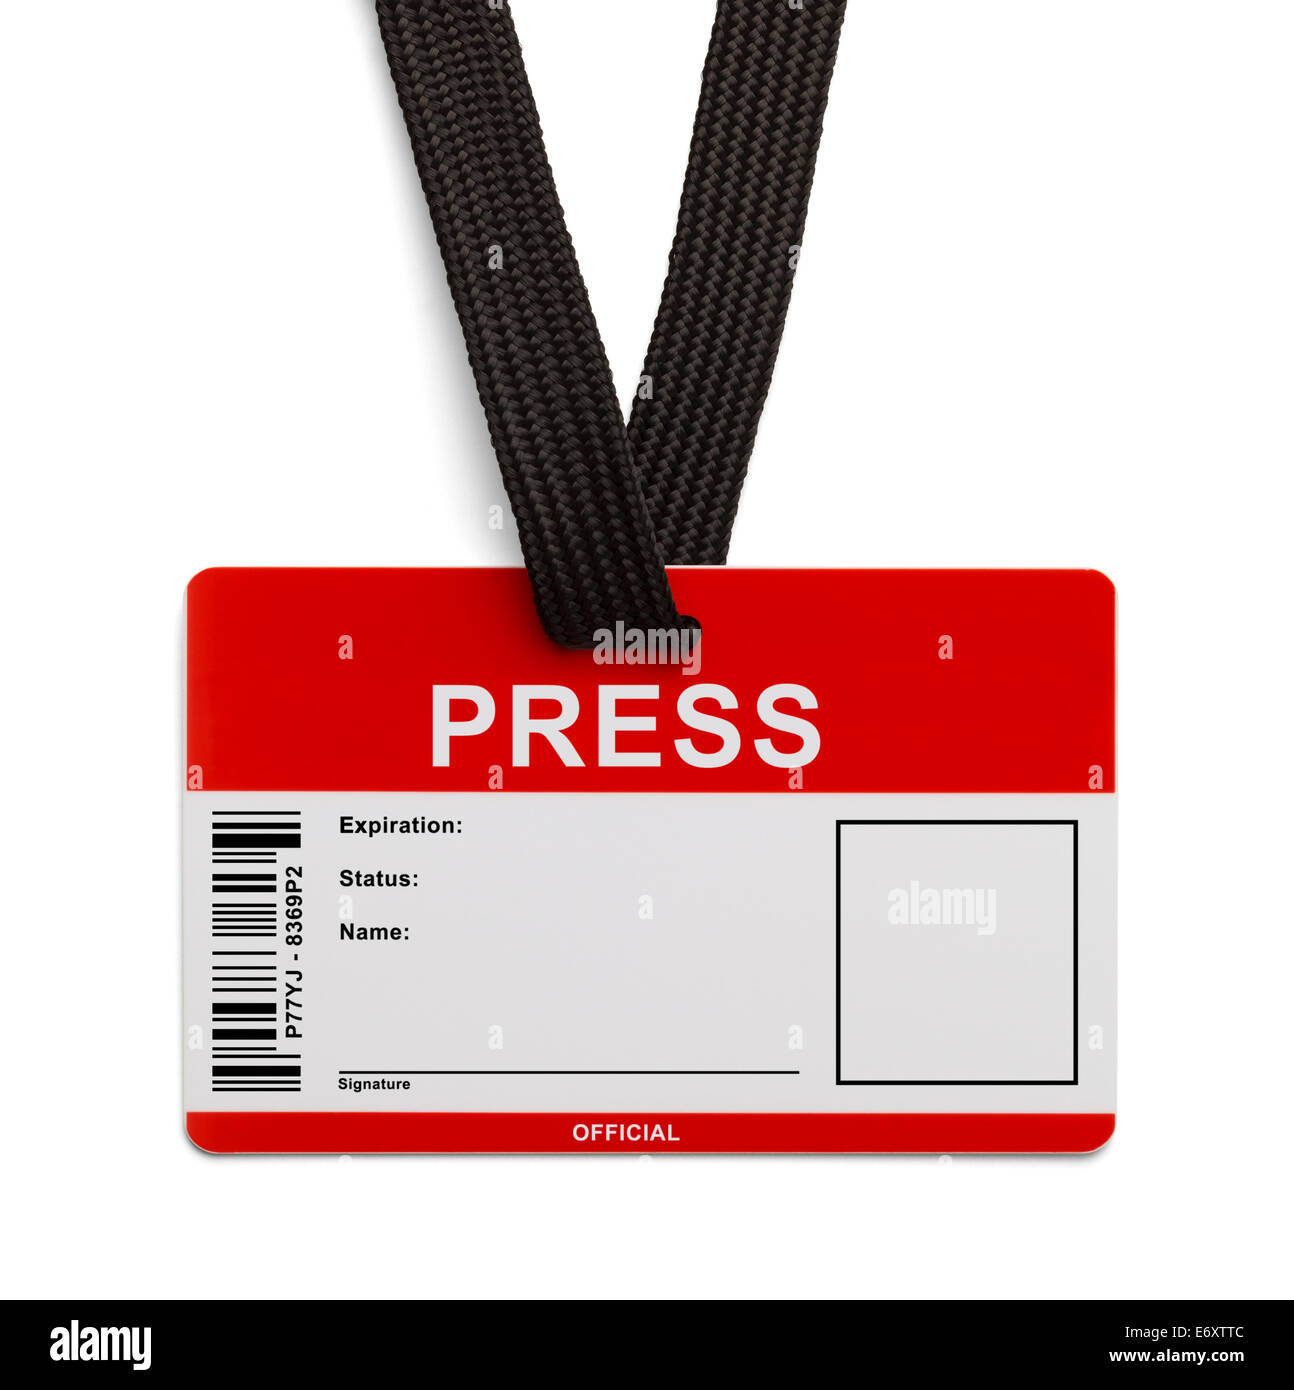 Press card Banque de photographies et d'images à haute résolution - Alamy